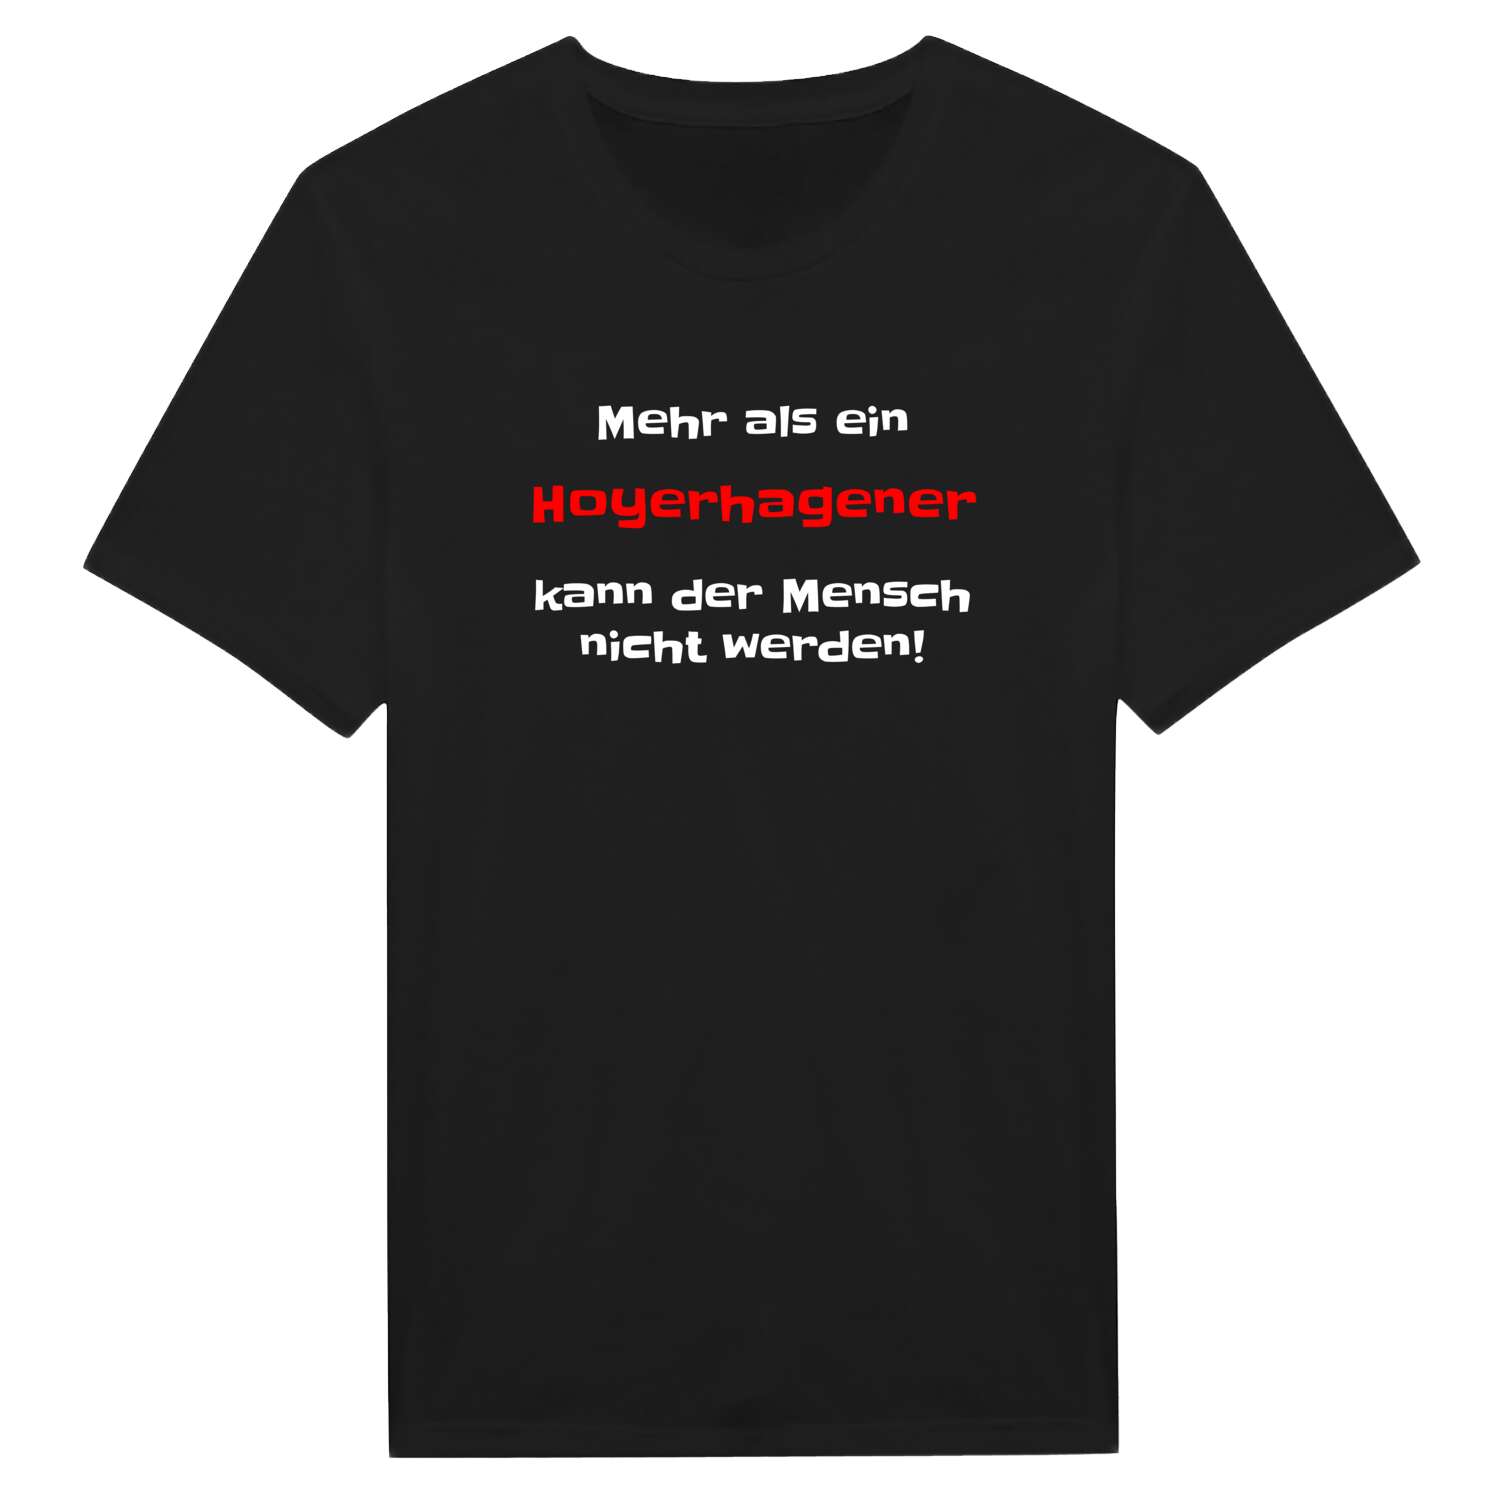 Hoyerhagen T-Shirt »Mehr als ein«